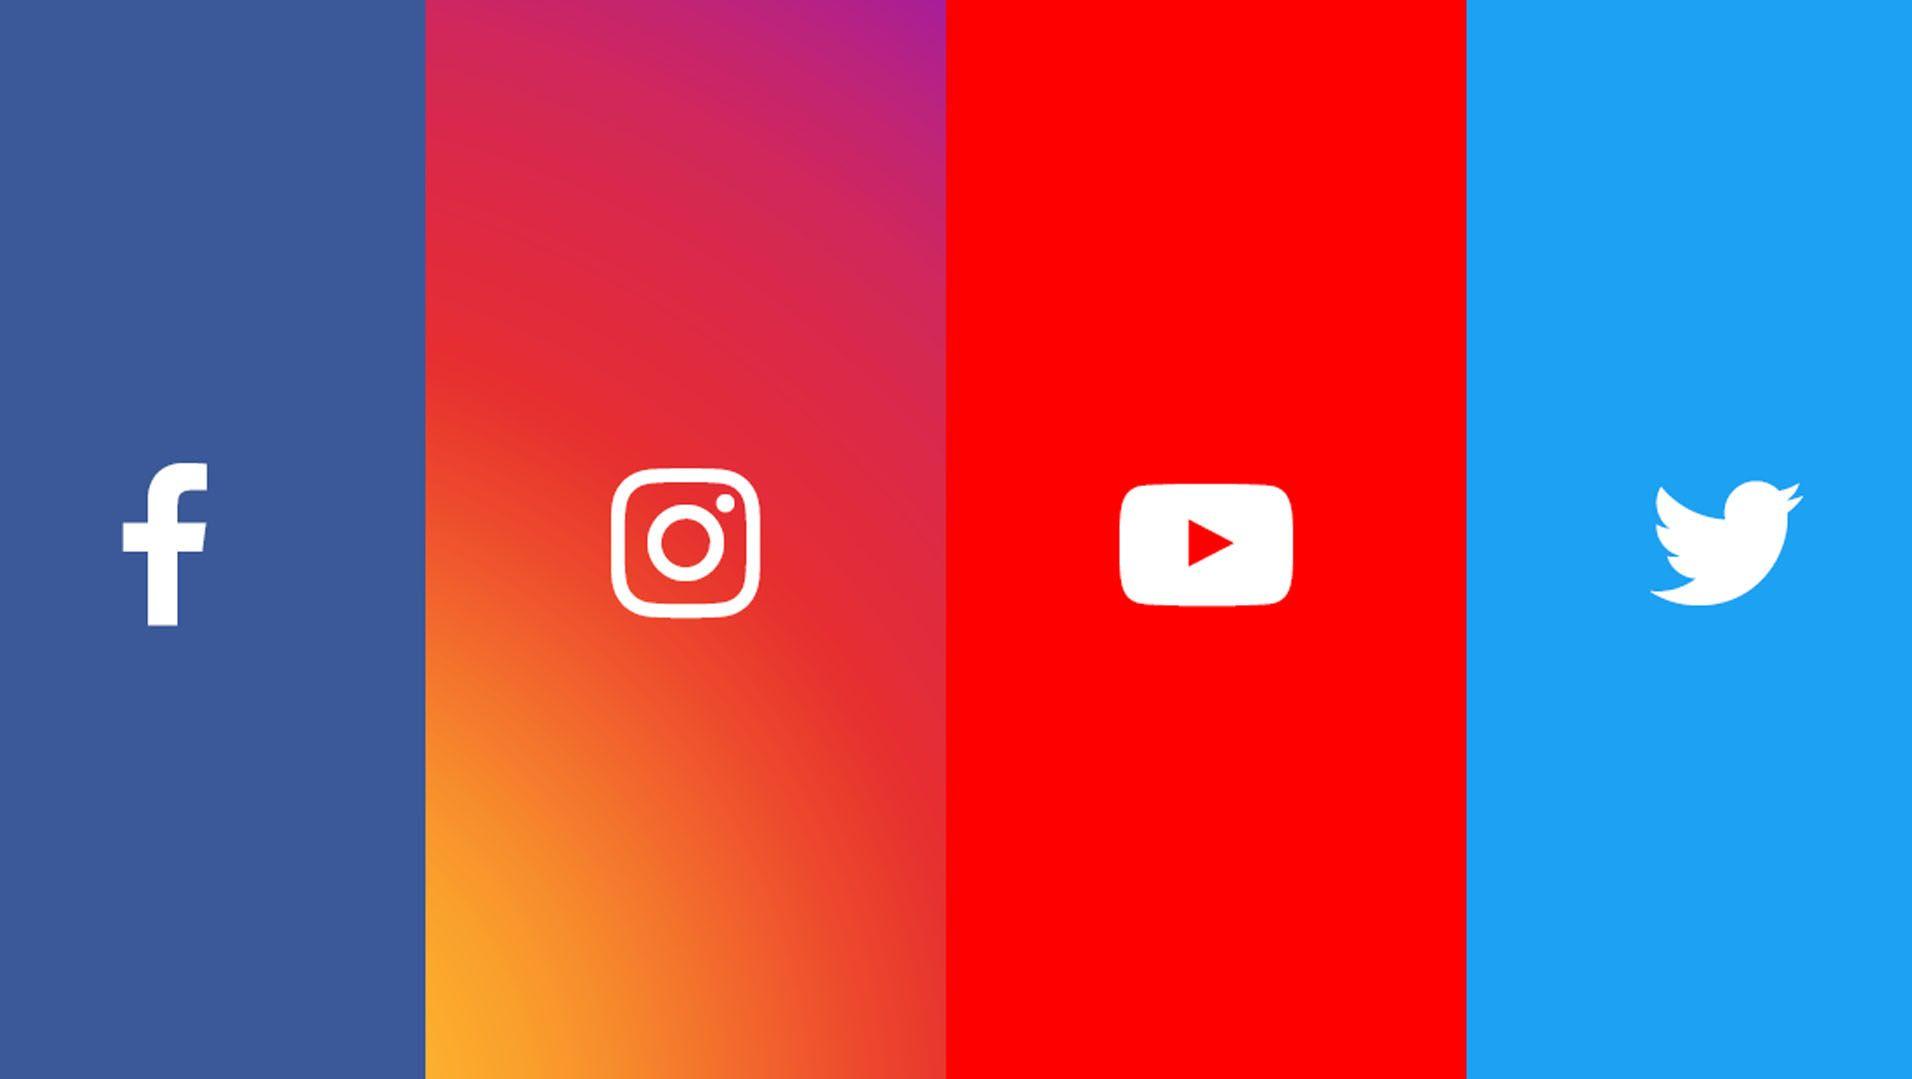 Facebook YouTube Instagram Logo - Arrows, lines and symbols for Instagram, Facebook, Youtube